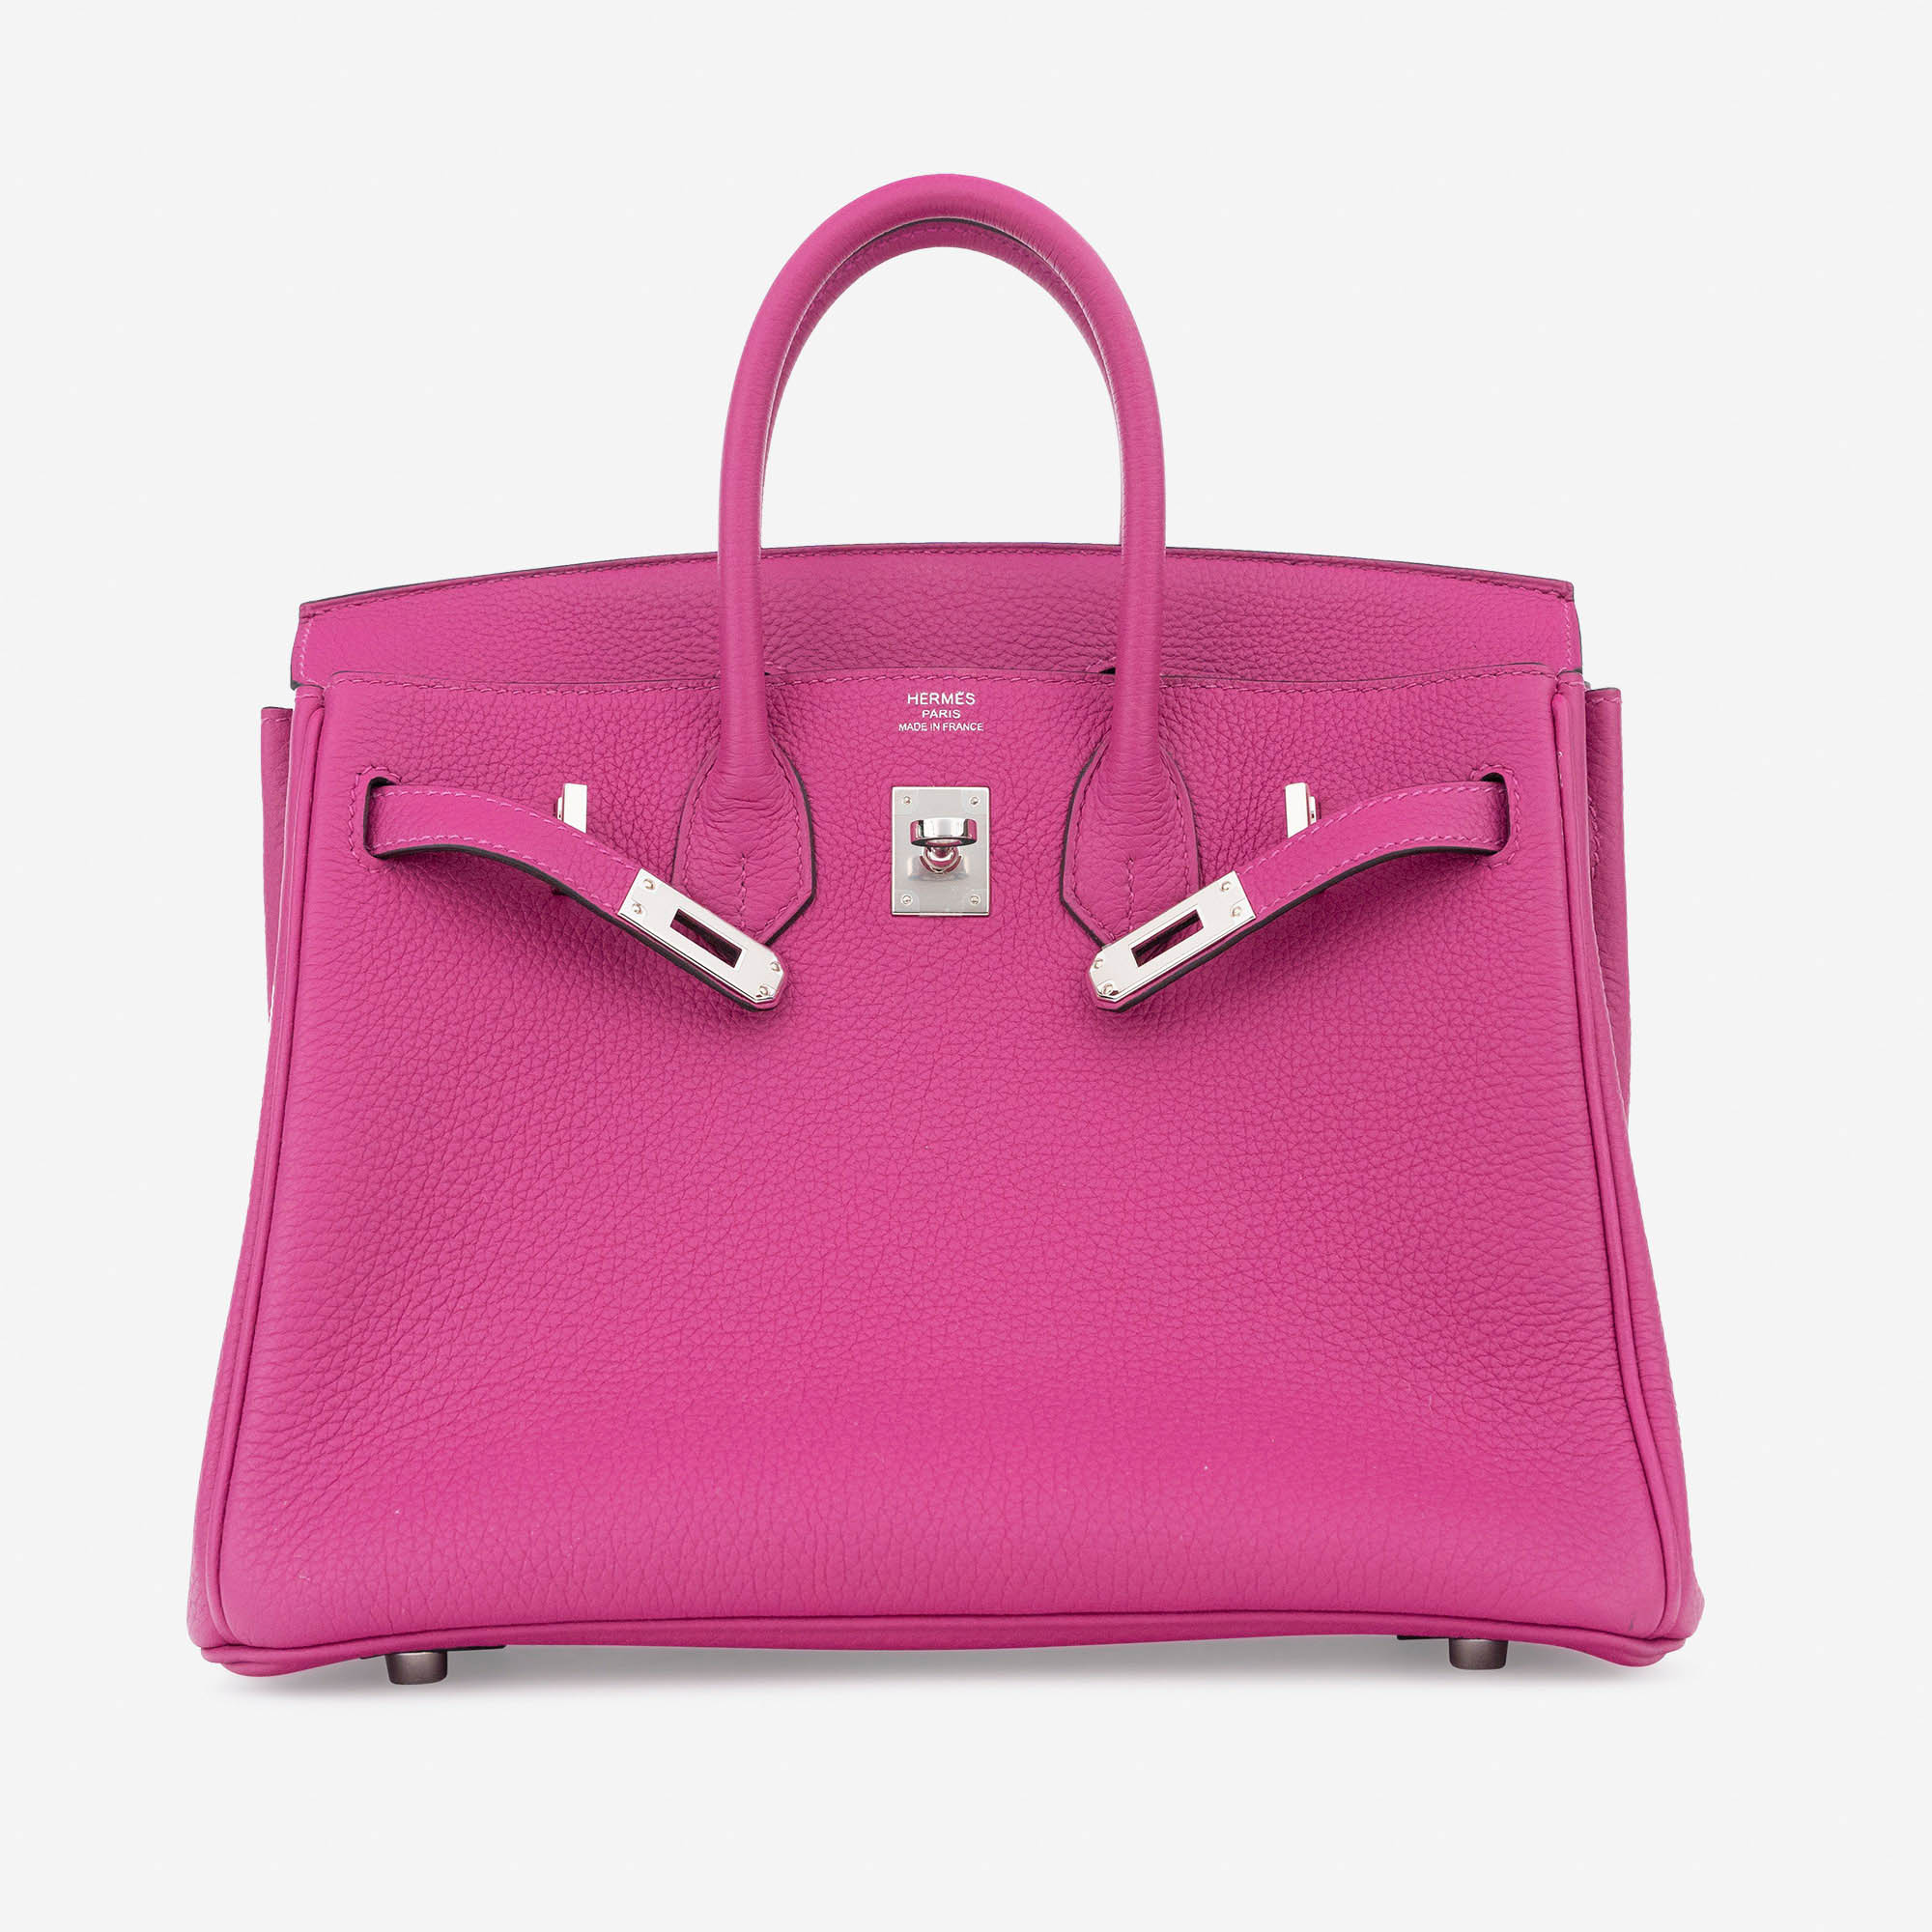 Hermes Birkin Handbags Sizes | Wydział Cybernetyki